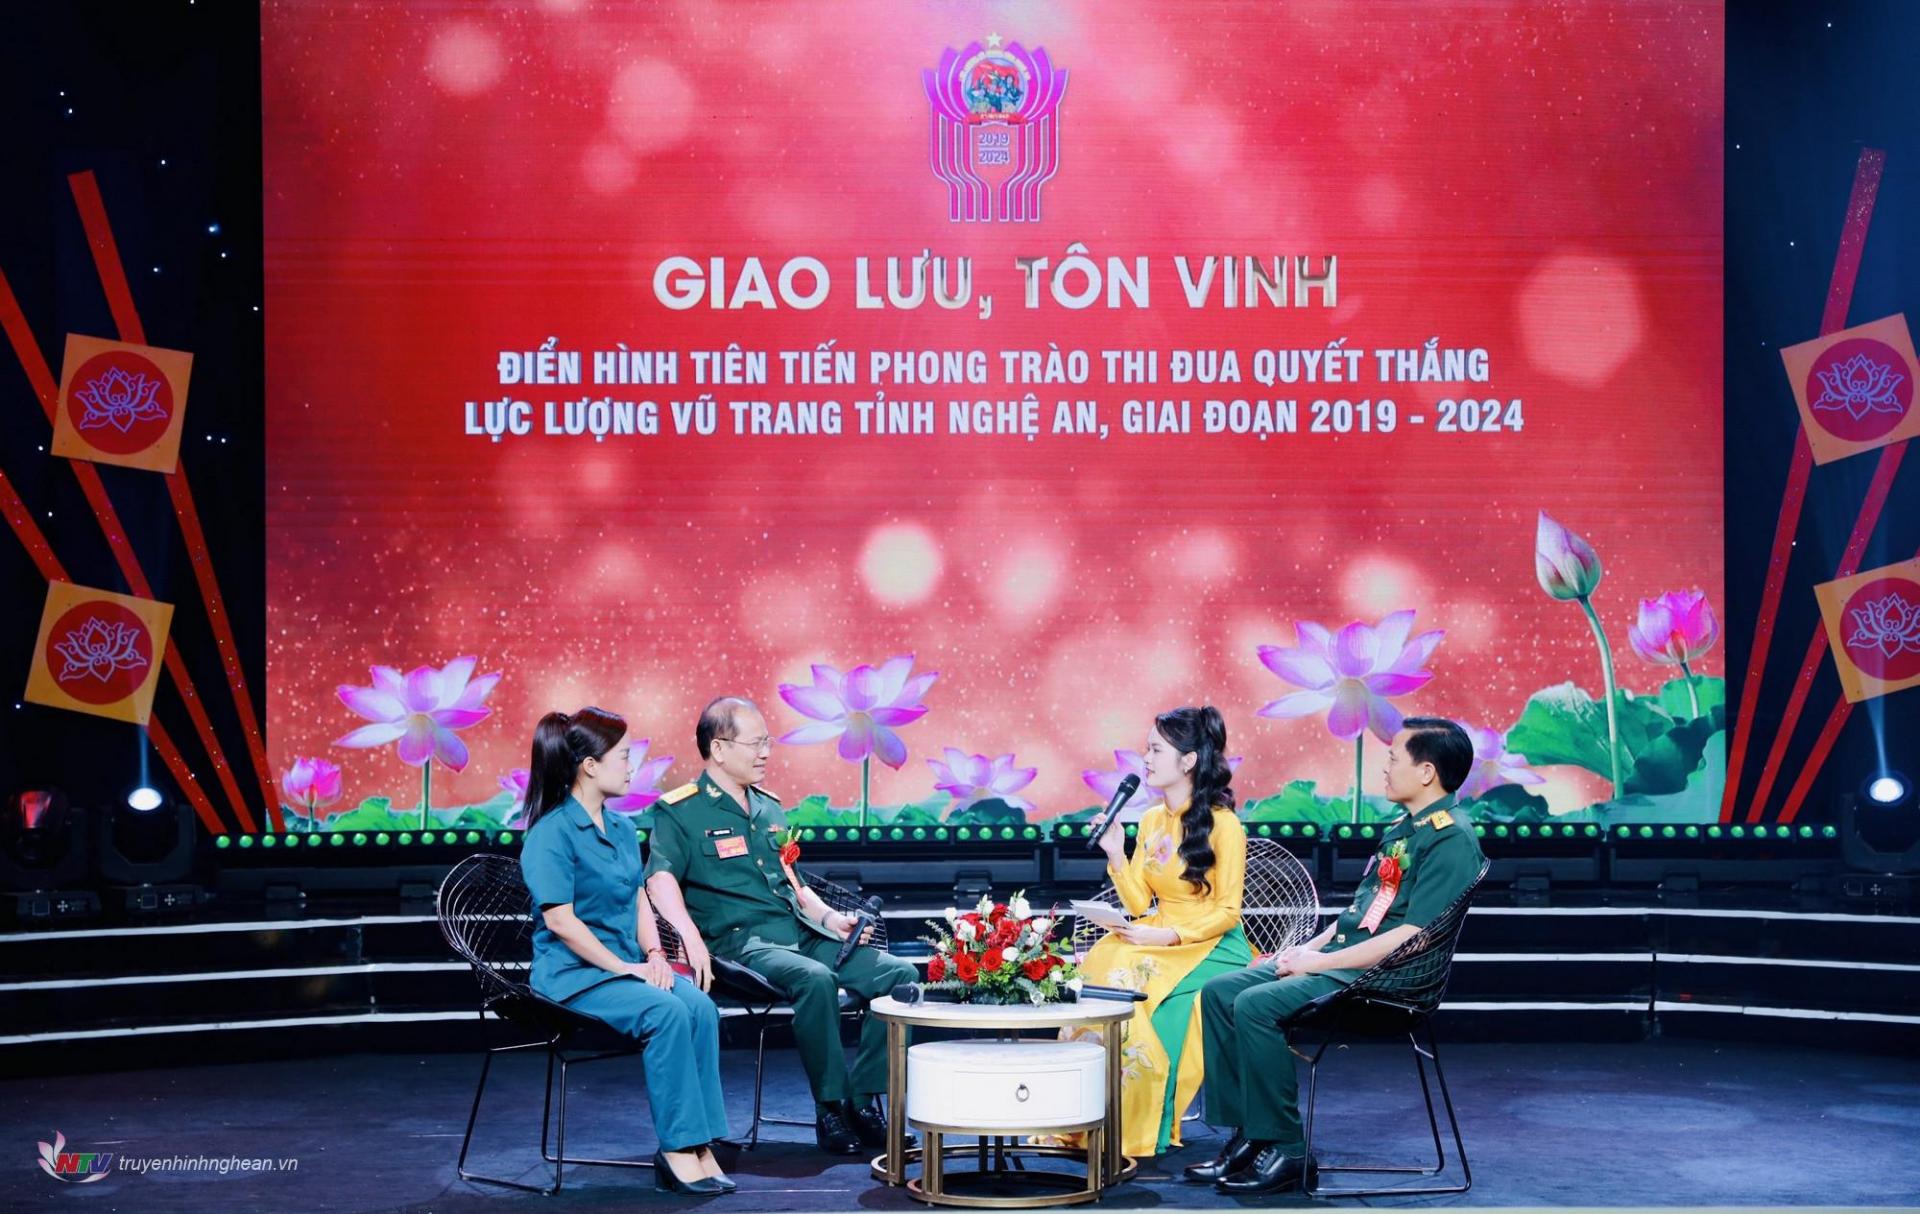 Các điển hình tiên tiến trong LLVT tỉnh Nghệ An tham gia giao lưu.